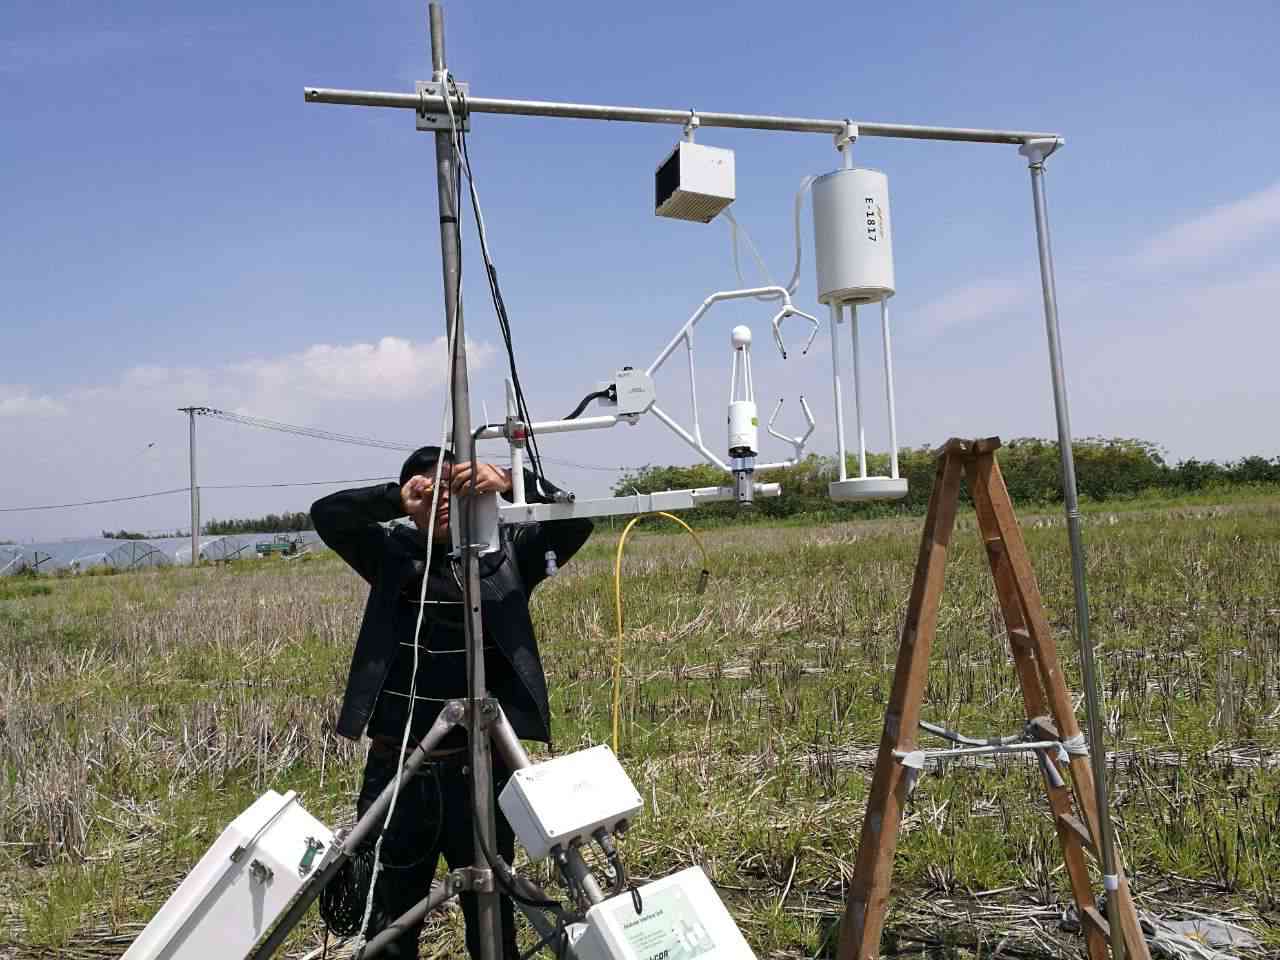  HT-8700 大气氨本底激光开路分析仪在休耕稻田的架设